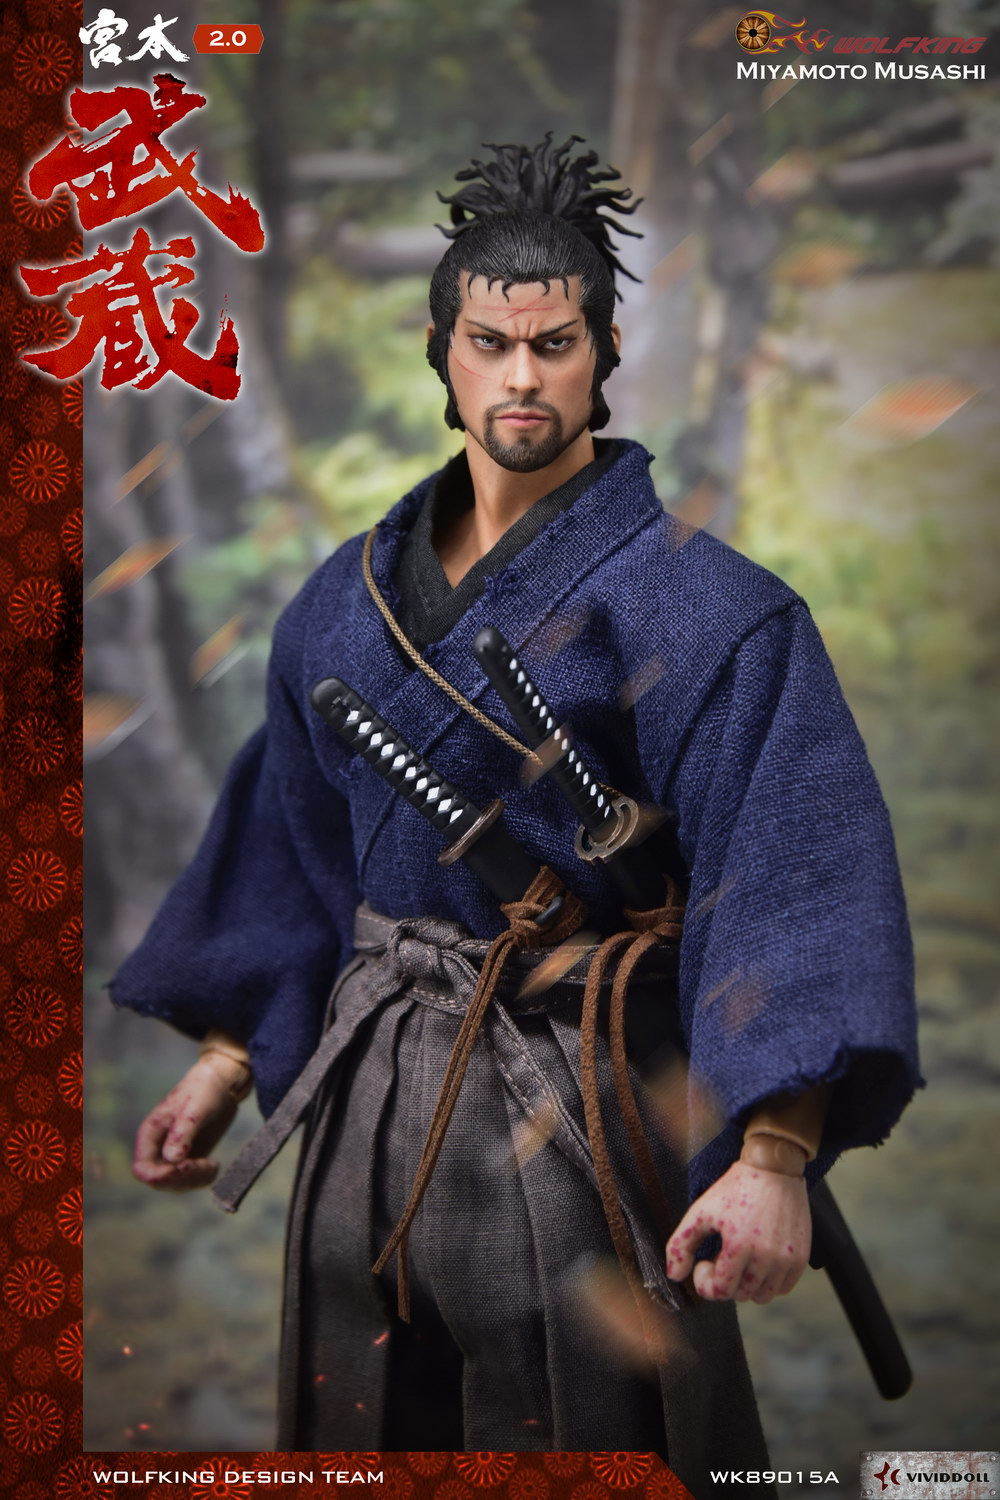 samurai shodown 4 or 5